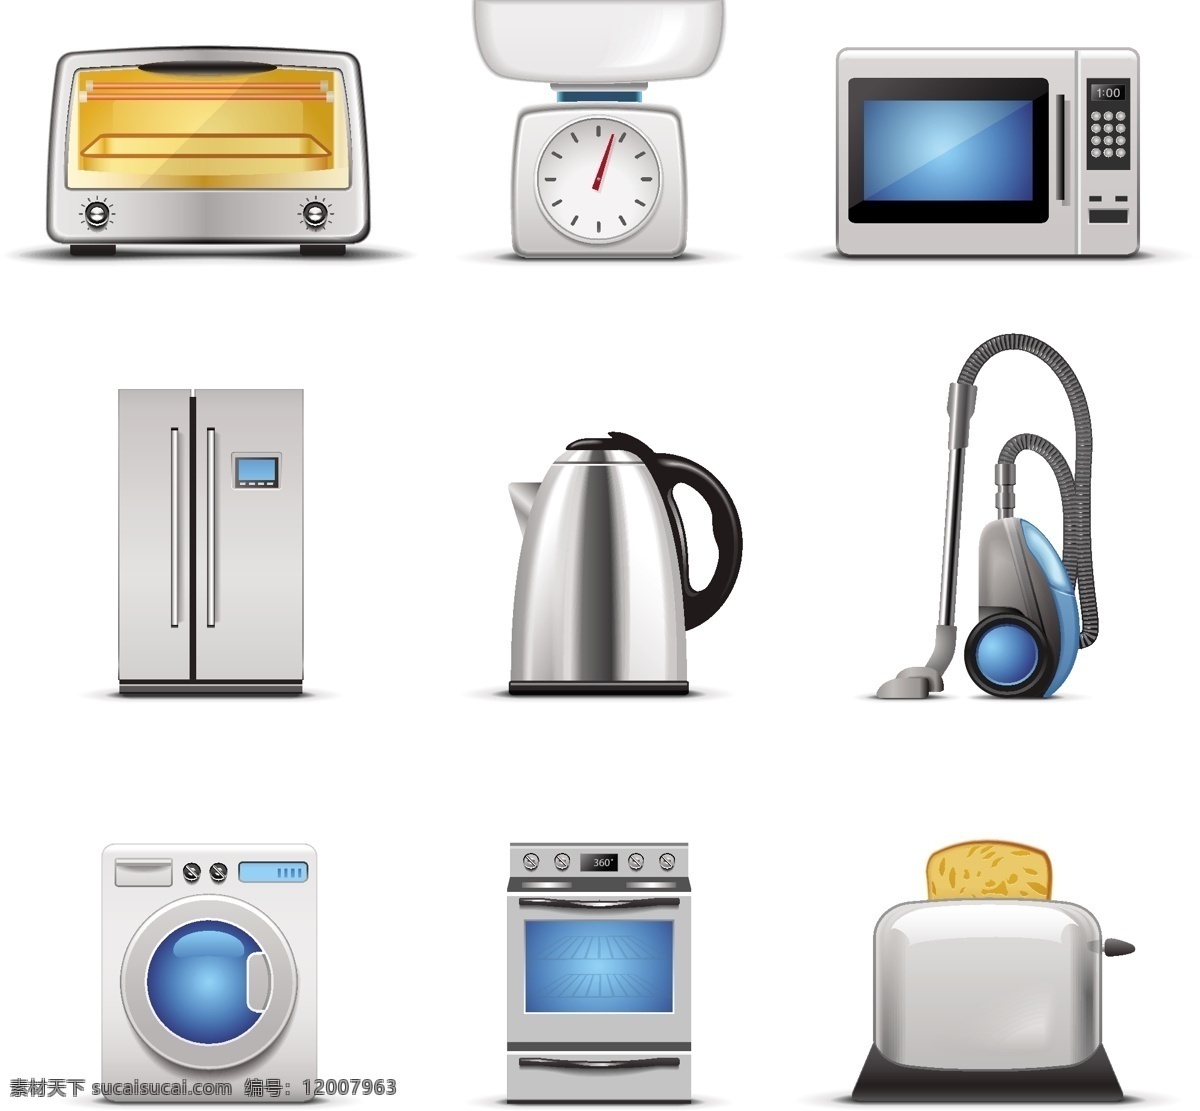 精美 器具 矢量 冰箱 材料 电器 精致 烤箱 水壶 微波炉 吸尘器 洗衣机 烤面包机 矢量图 日常生活